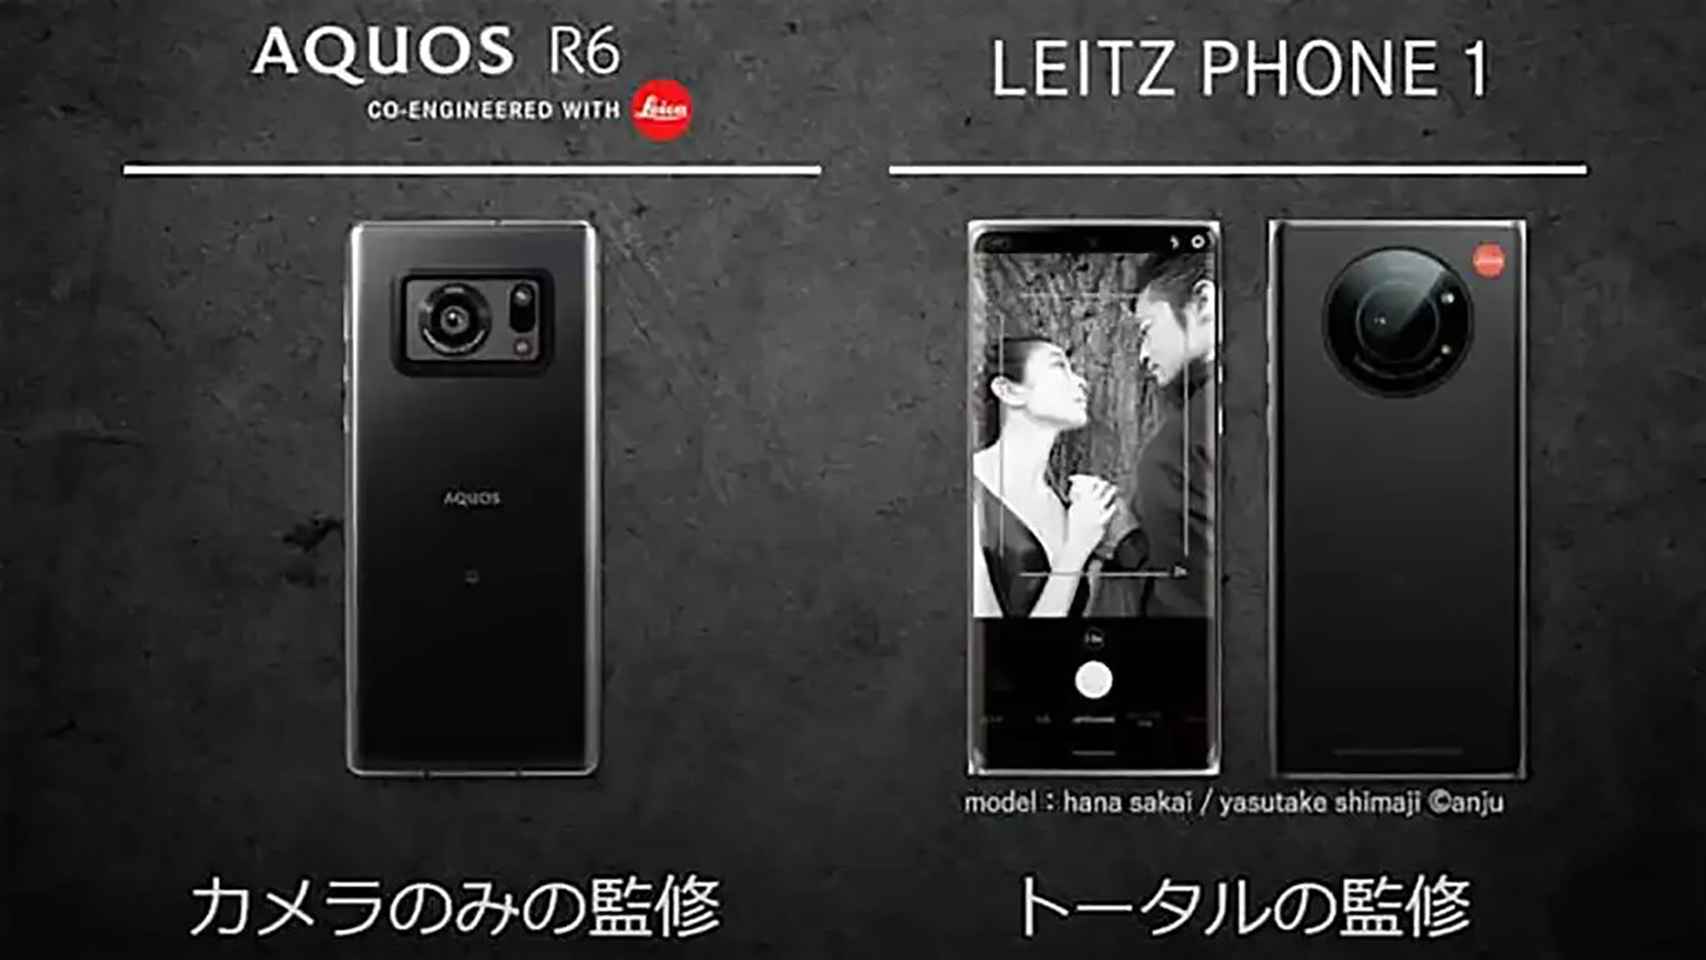 El Leitz Phone 1 es un Sharp R6 modificado.